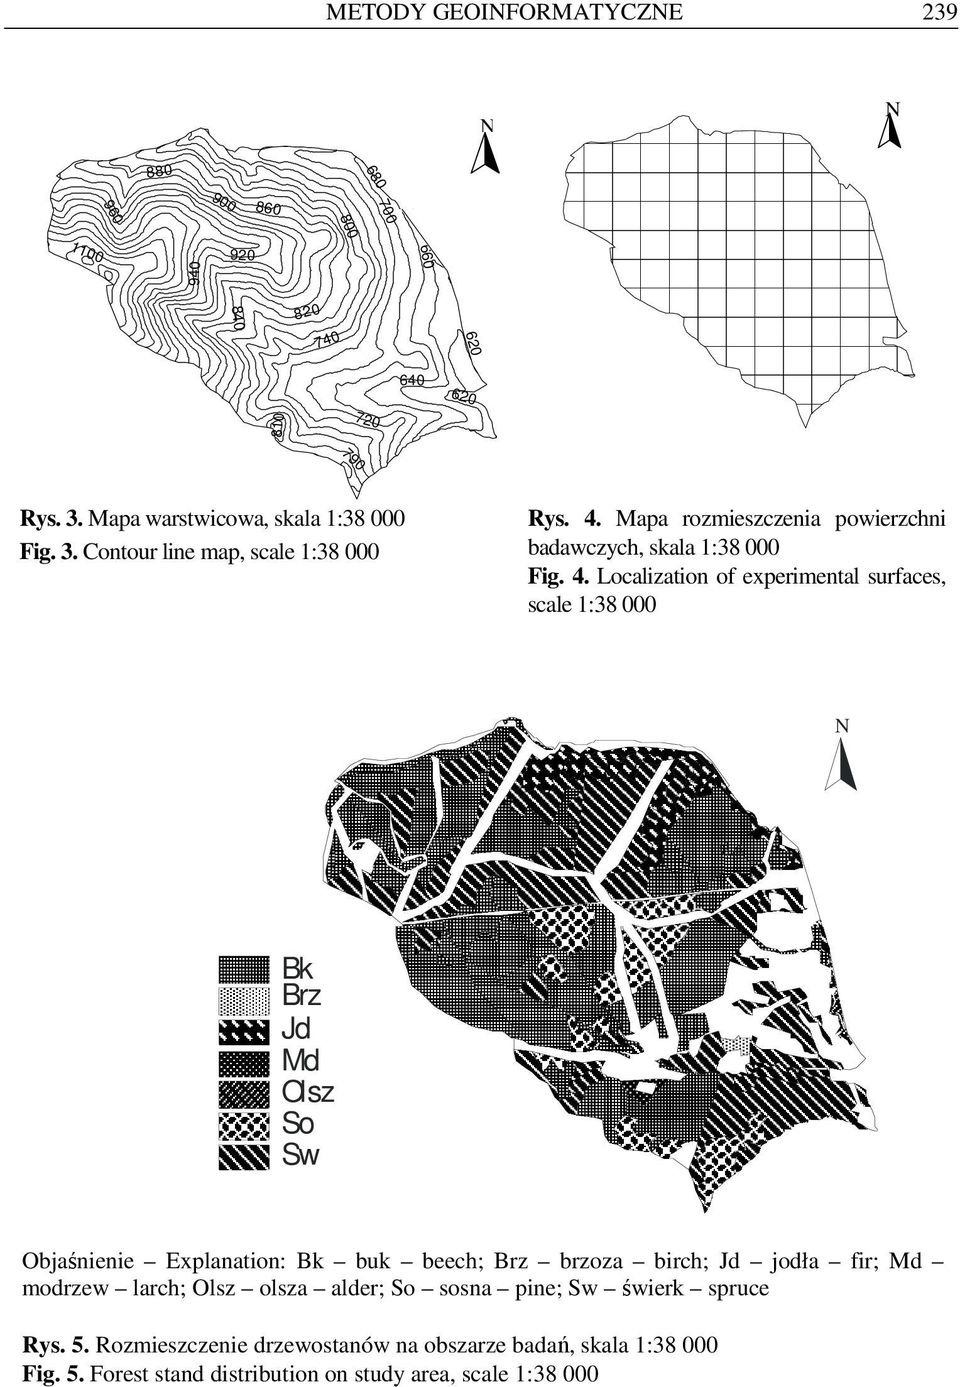 Mapa rozmieszczenia powierzchni badawczych, skala 1:38 000 Fig. 4.